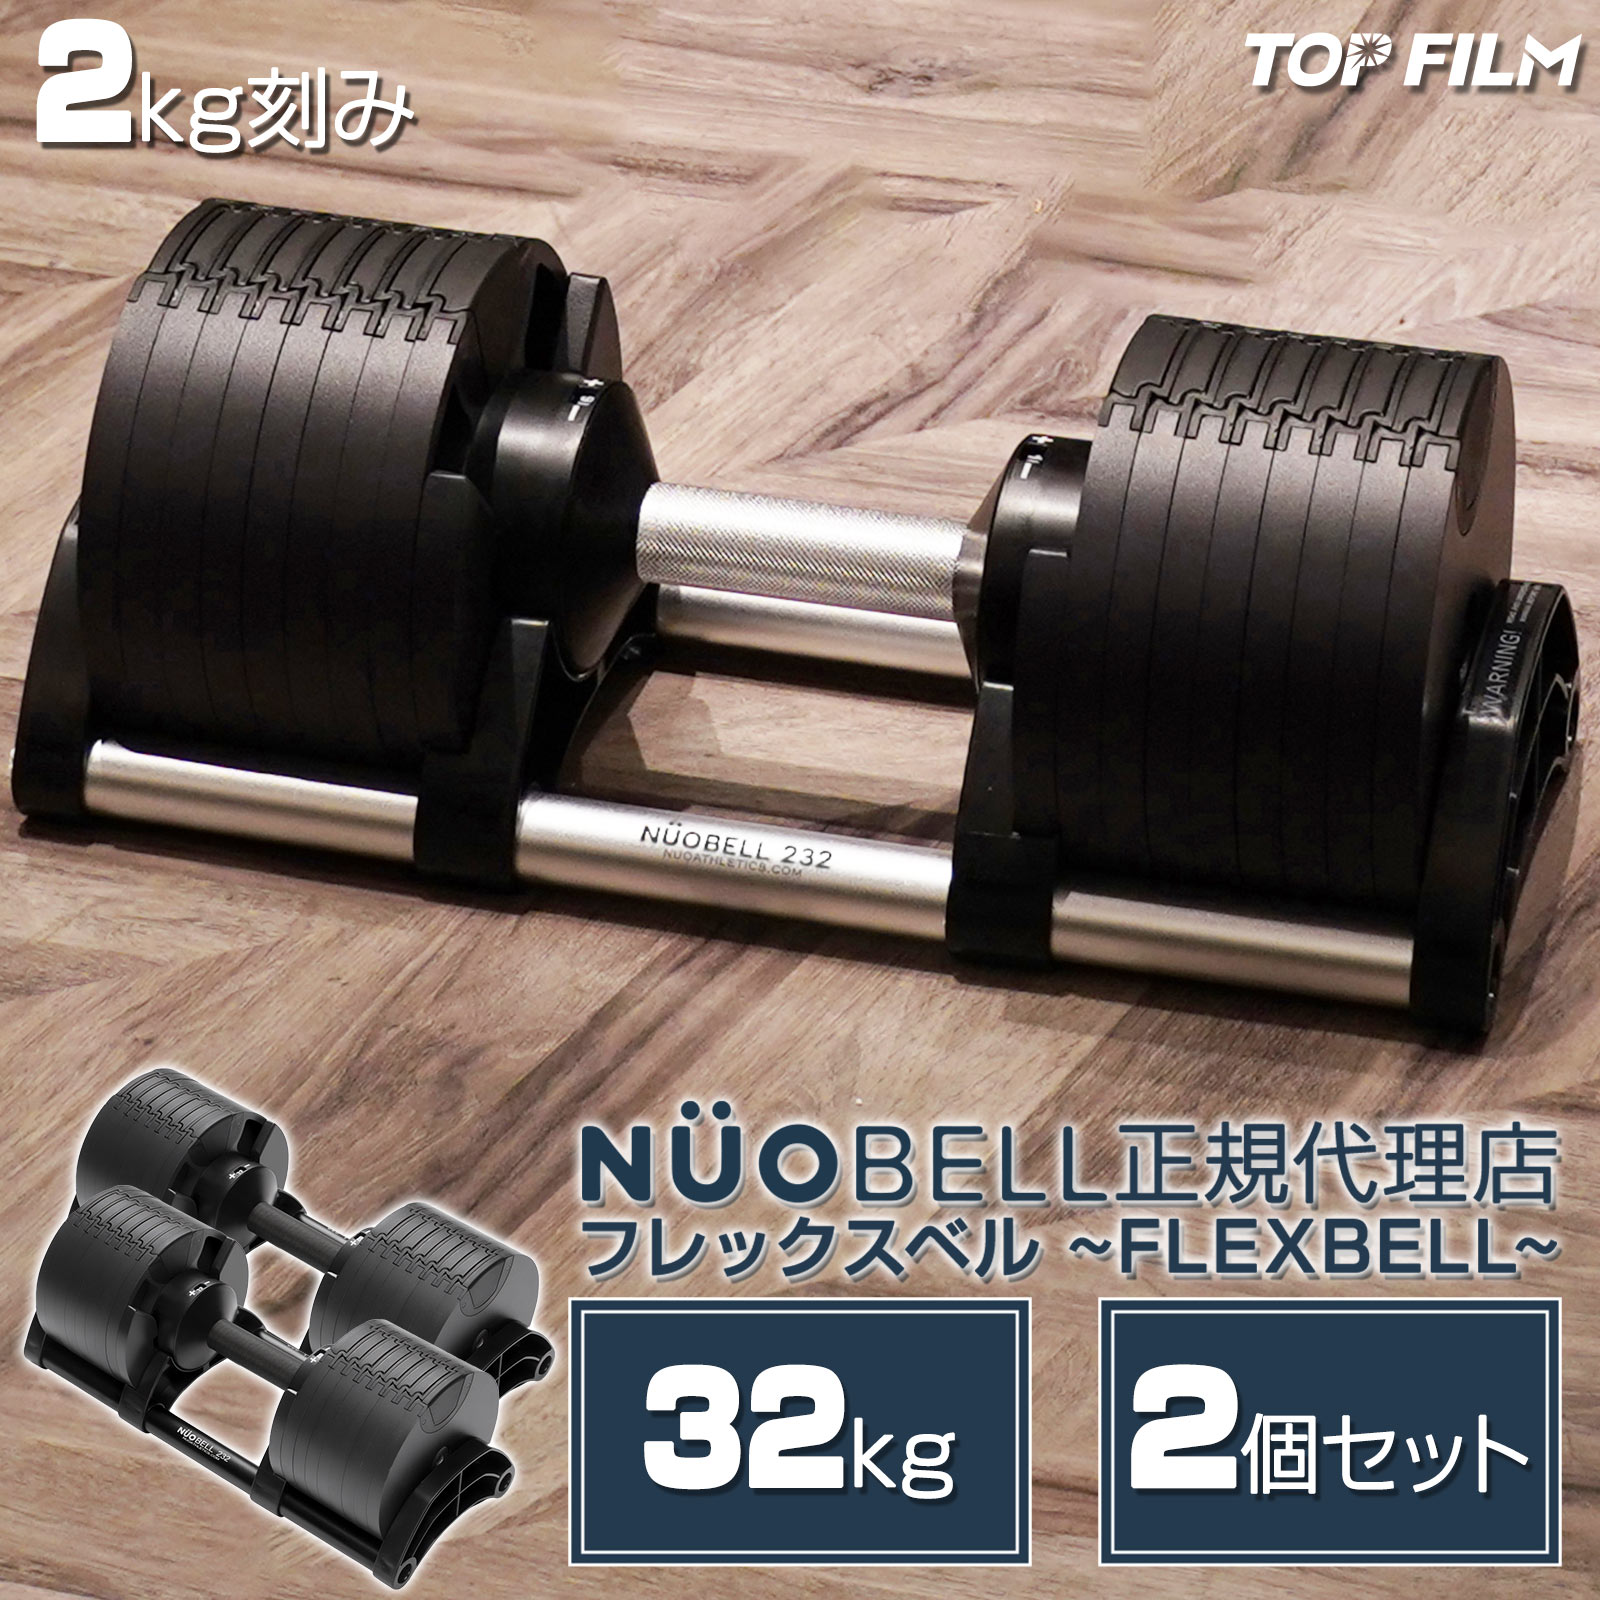 ダンベル 可変式 2個セット 32kg フレックスベル TOP FILM : flex32-2 